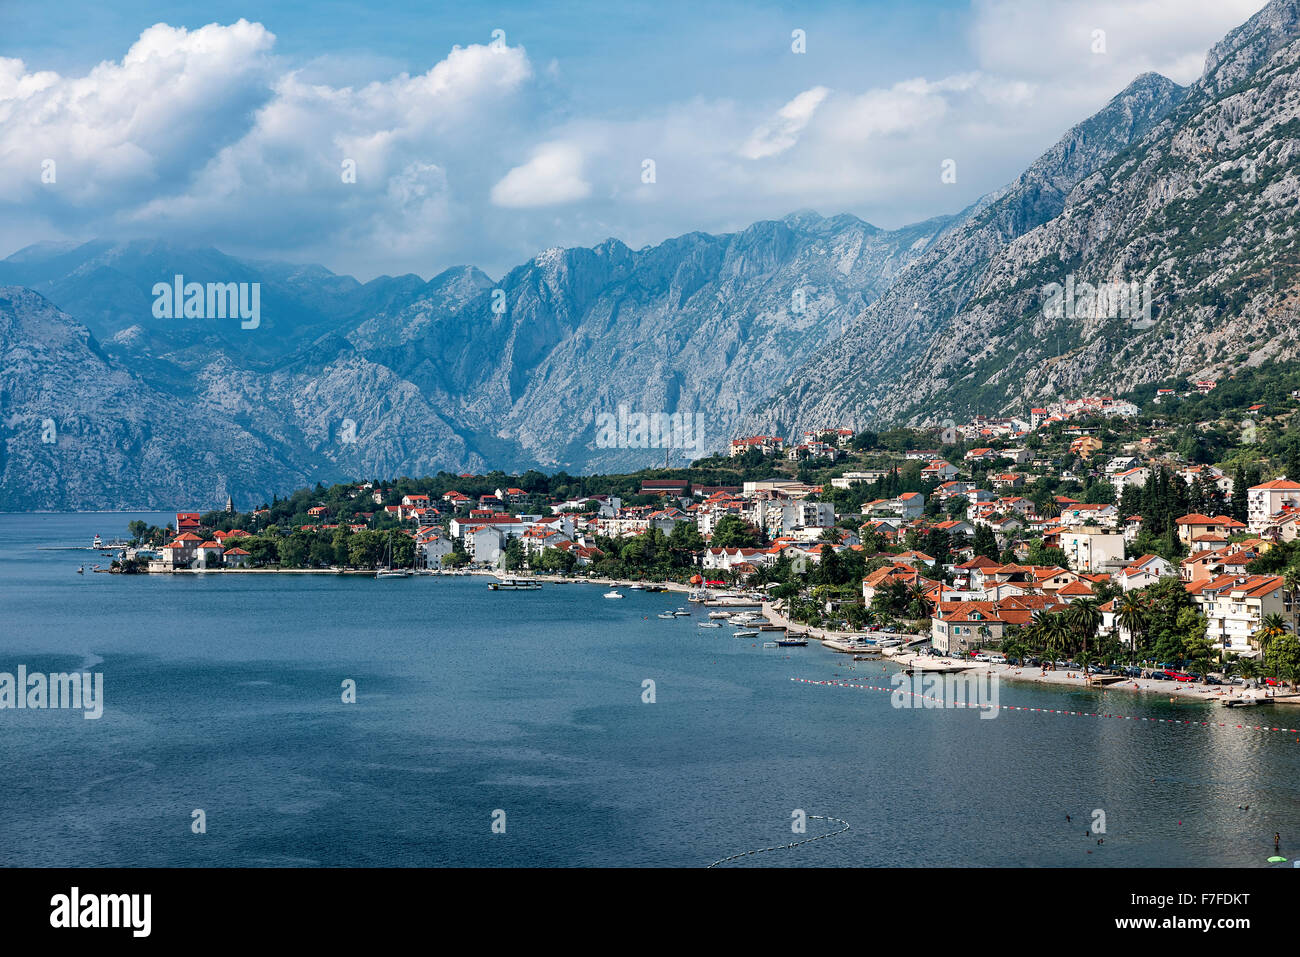 Ciudad costera de Kotor, la bahía de Kotor, Montenegro Foto de stock